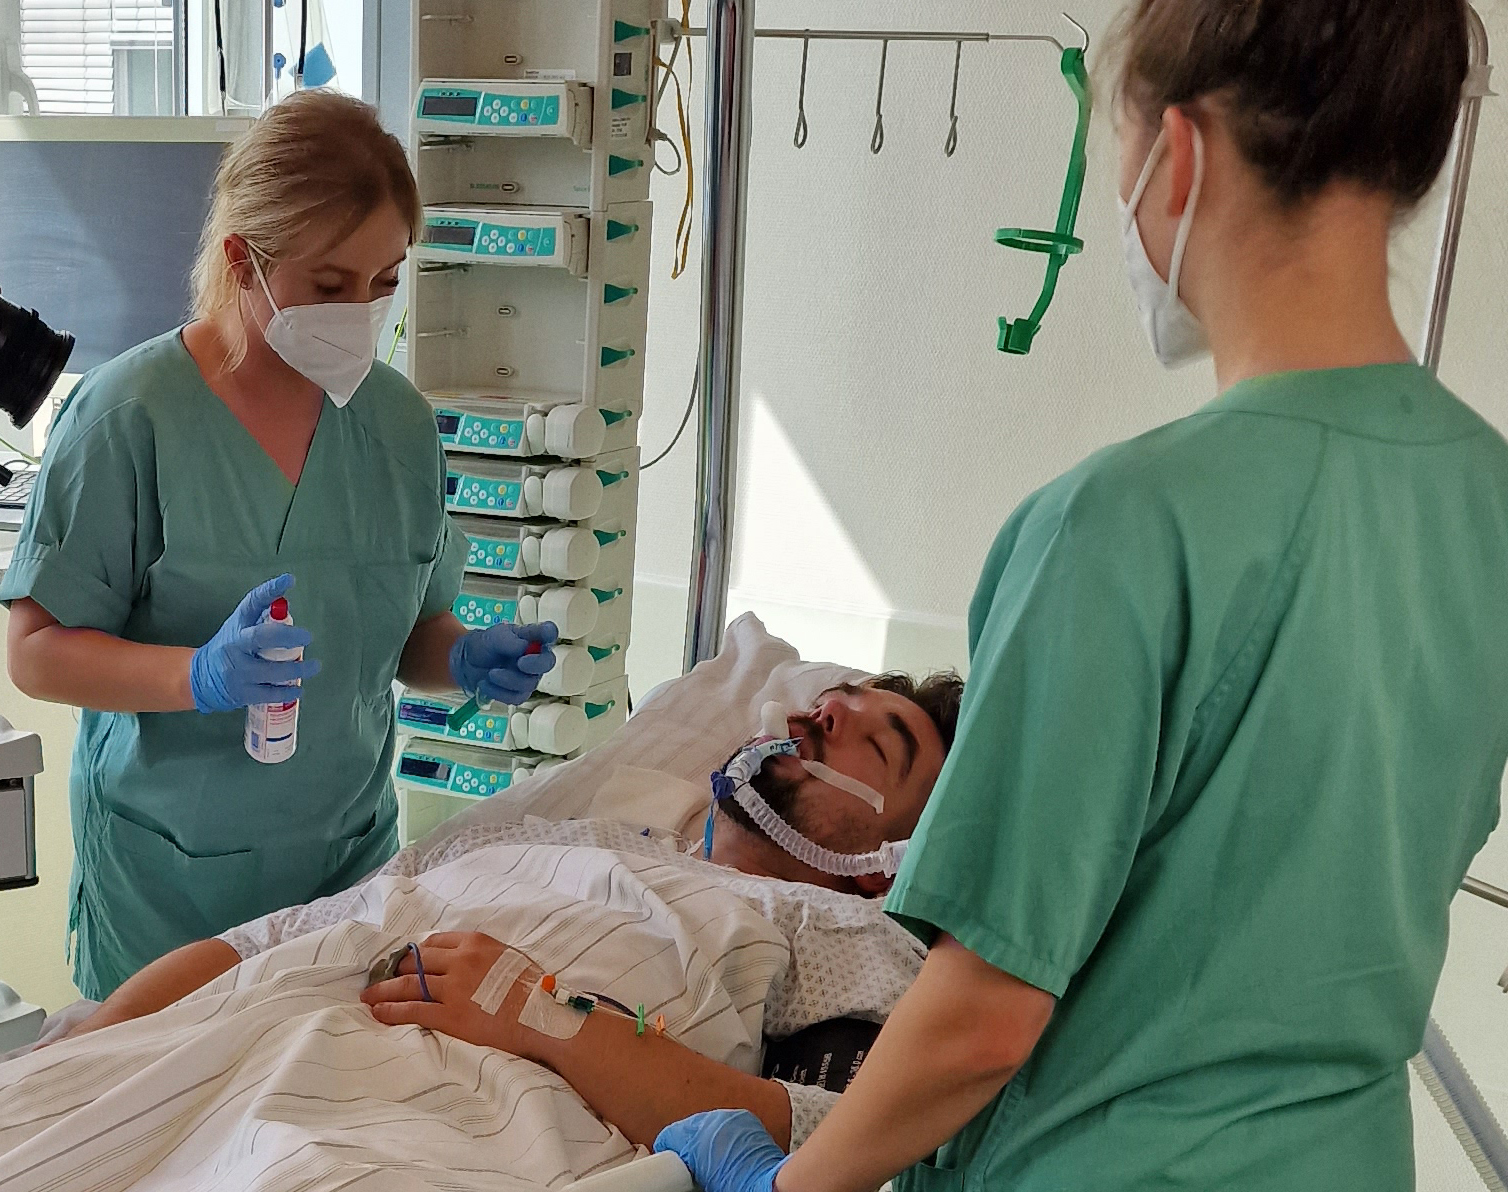 Ein Patient liegt im Bett und wird beatmet. Zwei Schwestern mit Mund-Nasenmasken betreuen ihn. 